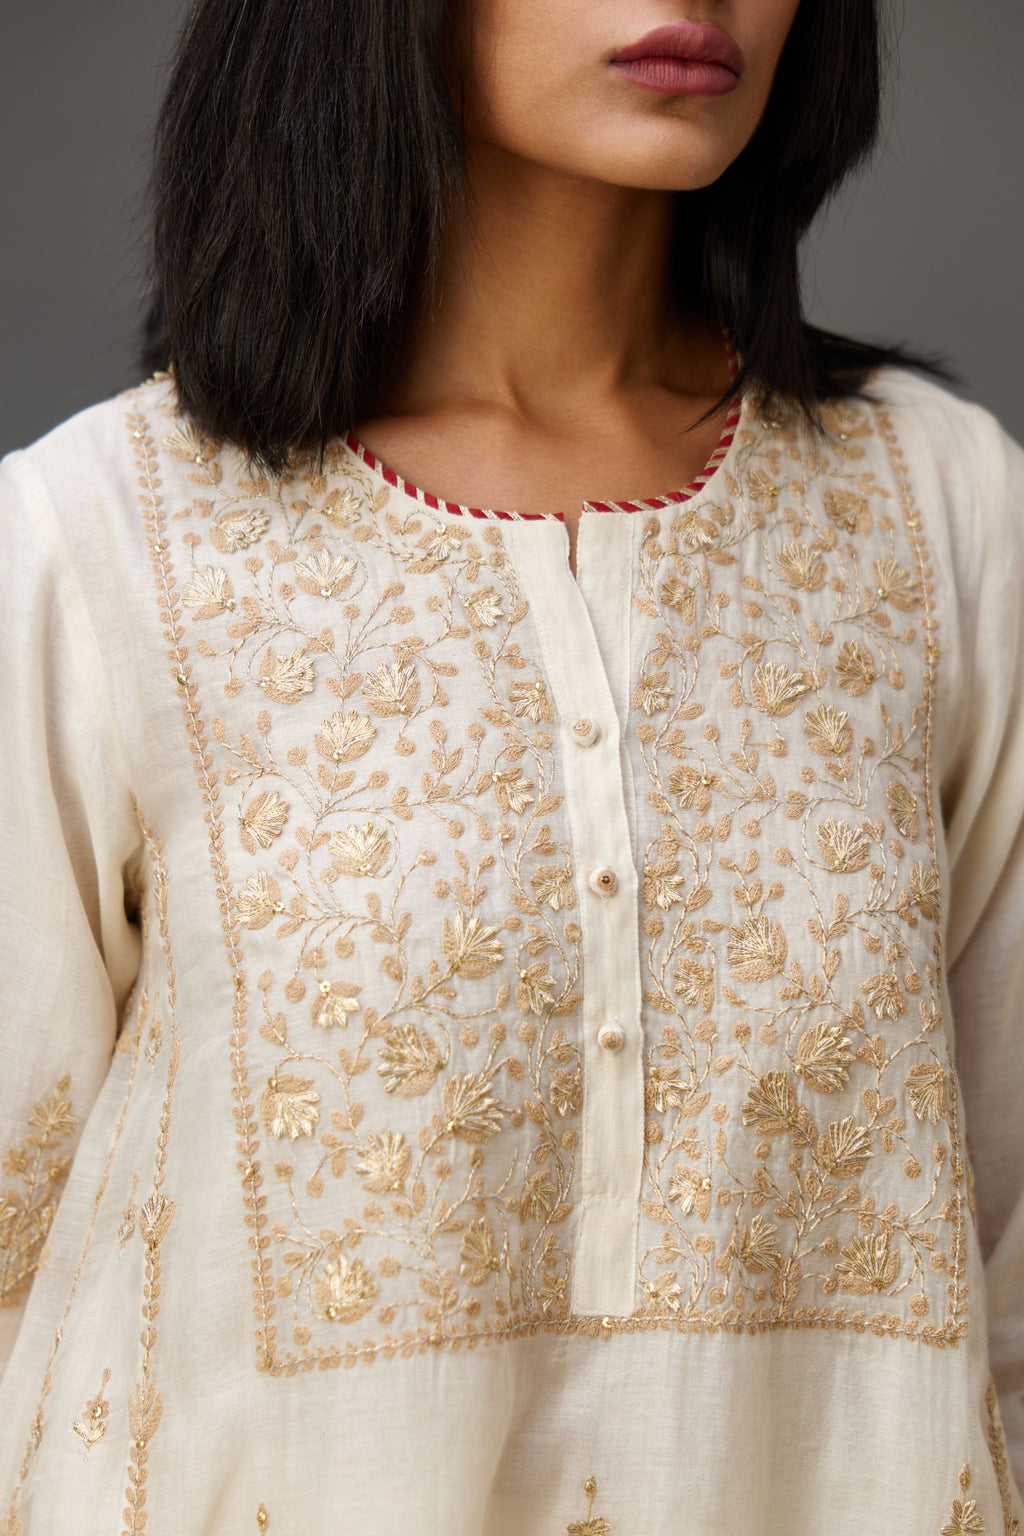 Buy Women Stylish, Beautiful Pakistani Chikankari Kurta with Pant 2 Piece,  Embroidered Kurta and Pant Set Cotton Blend (Medium) White at Amazon.in